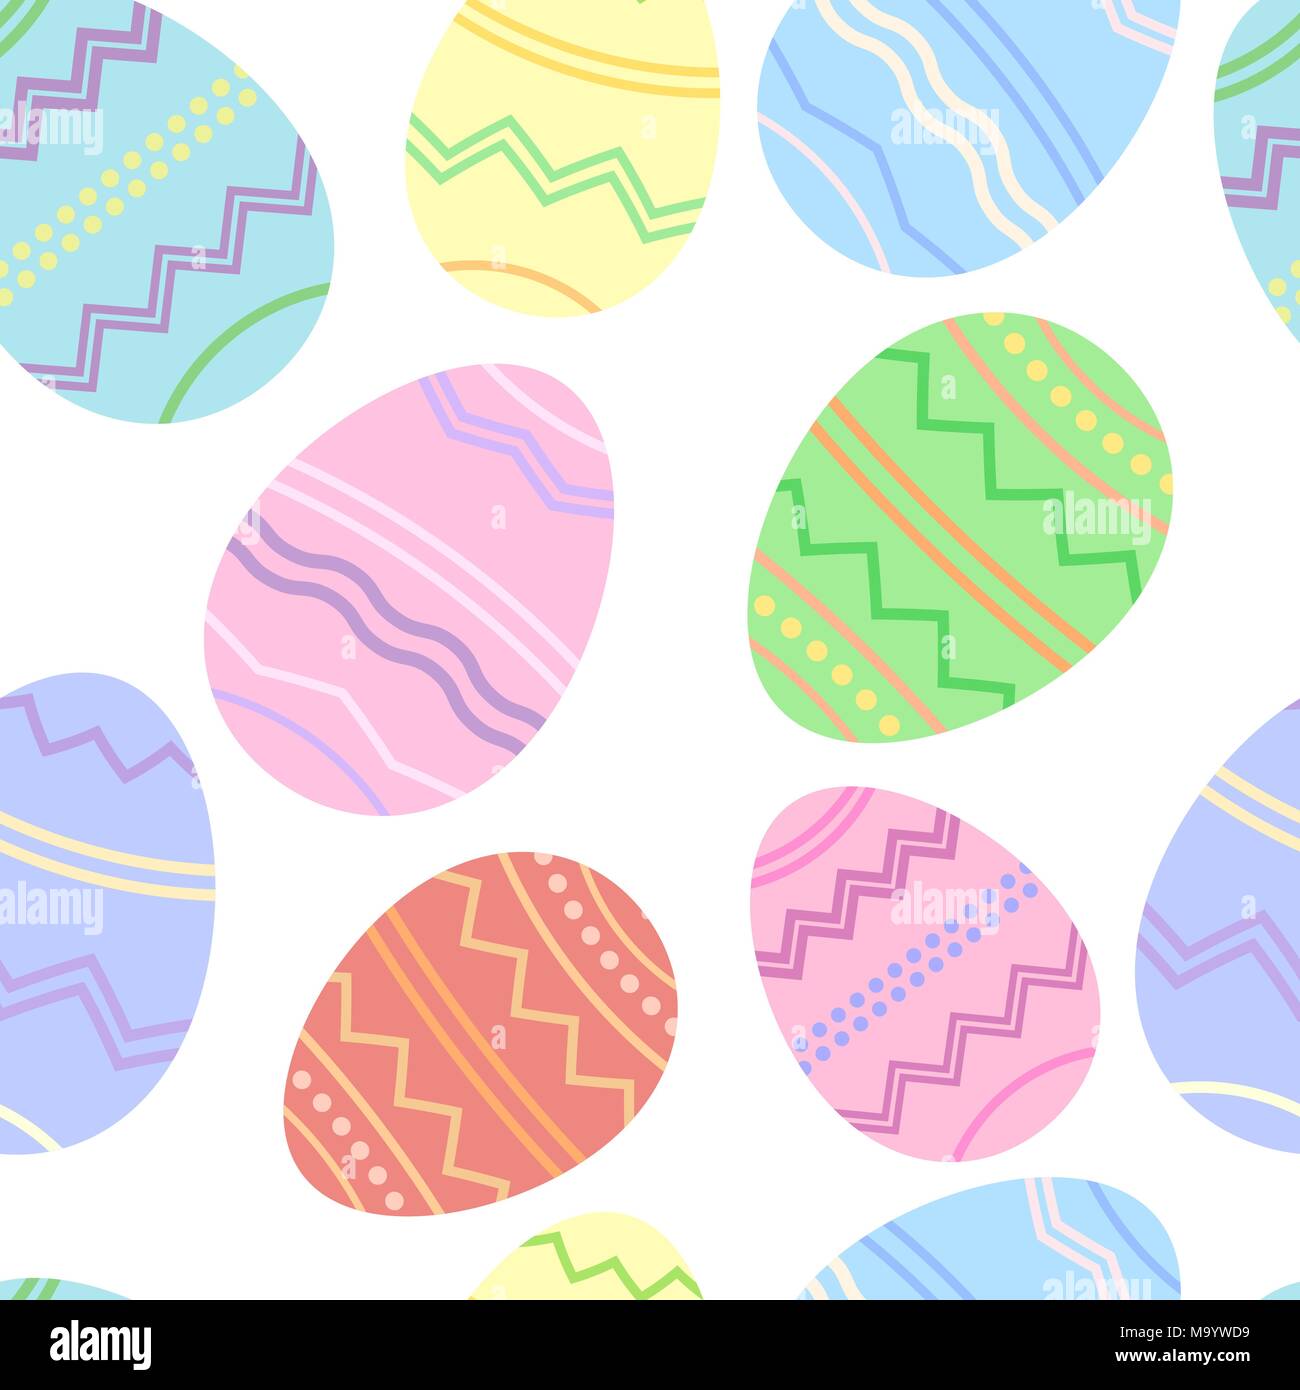 Easter illustration, seamless eggs background, vector wallpaper Stock Vector